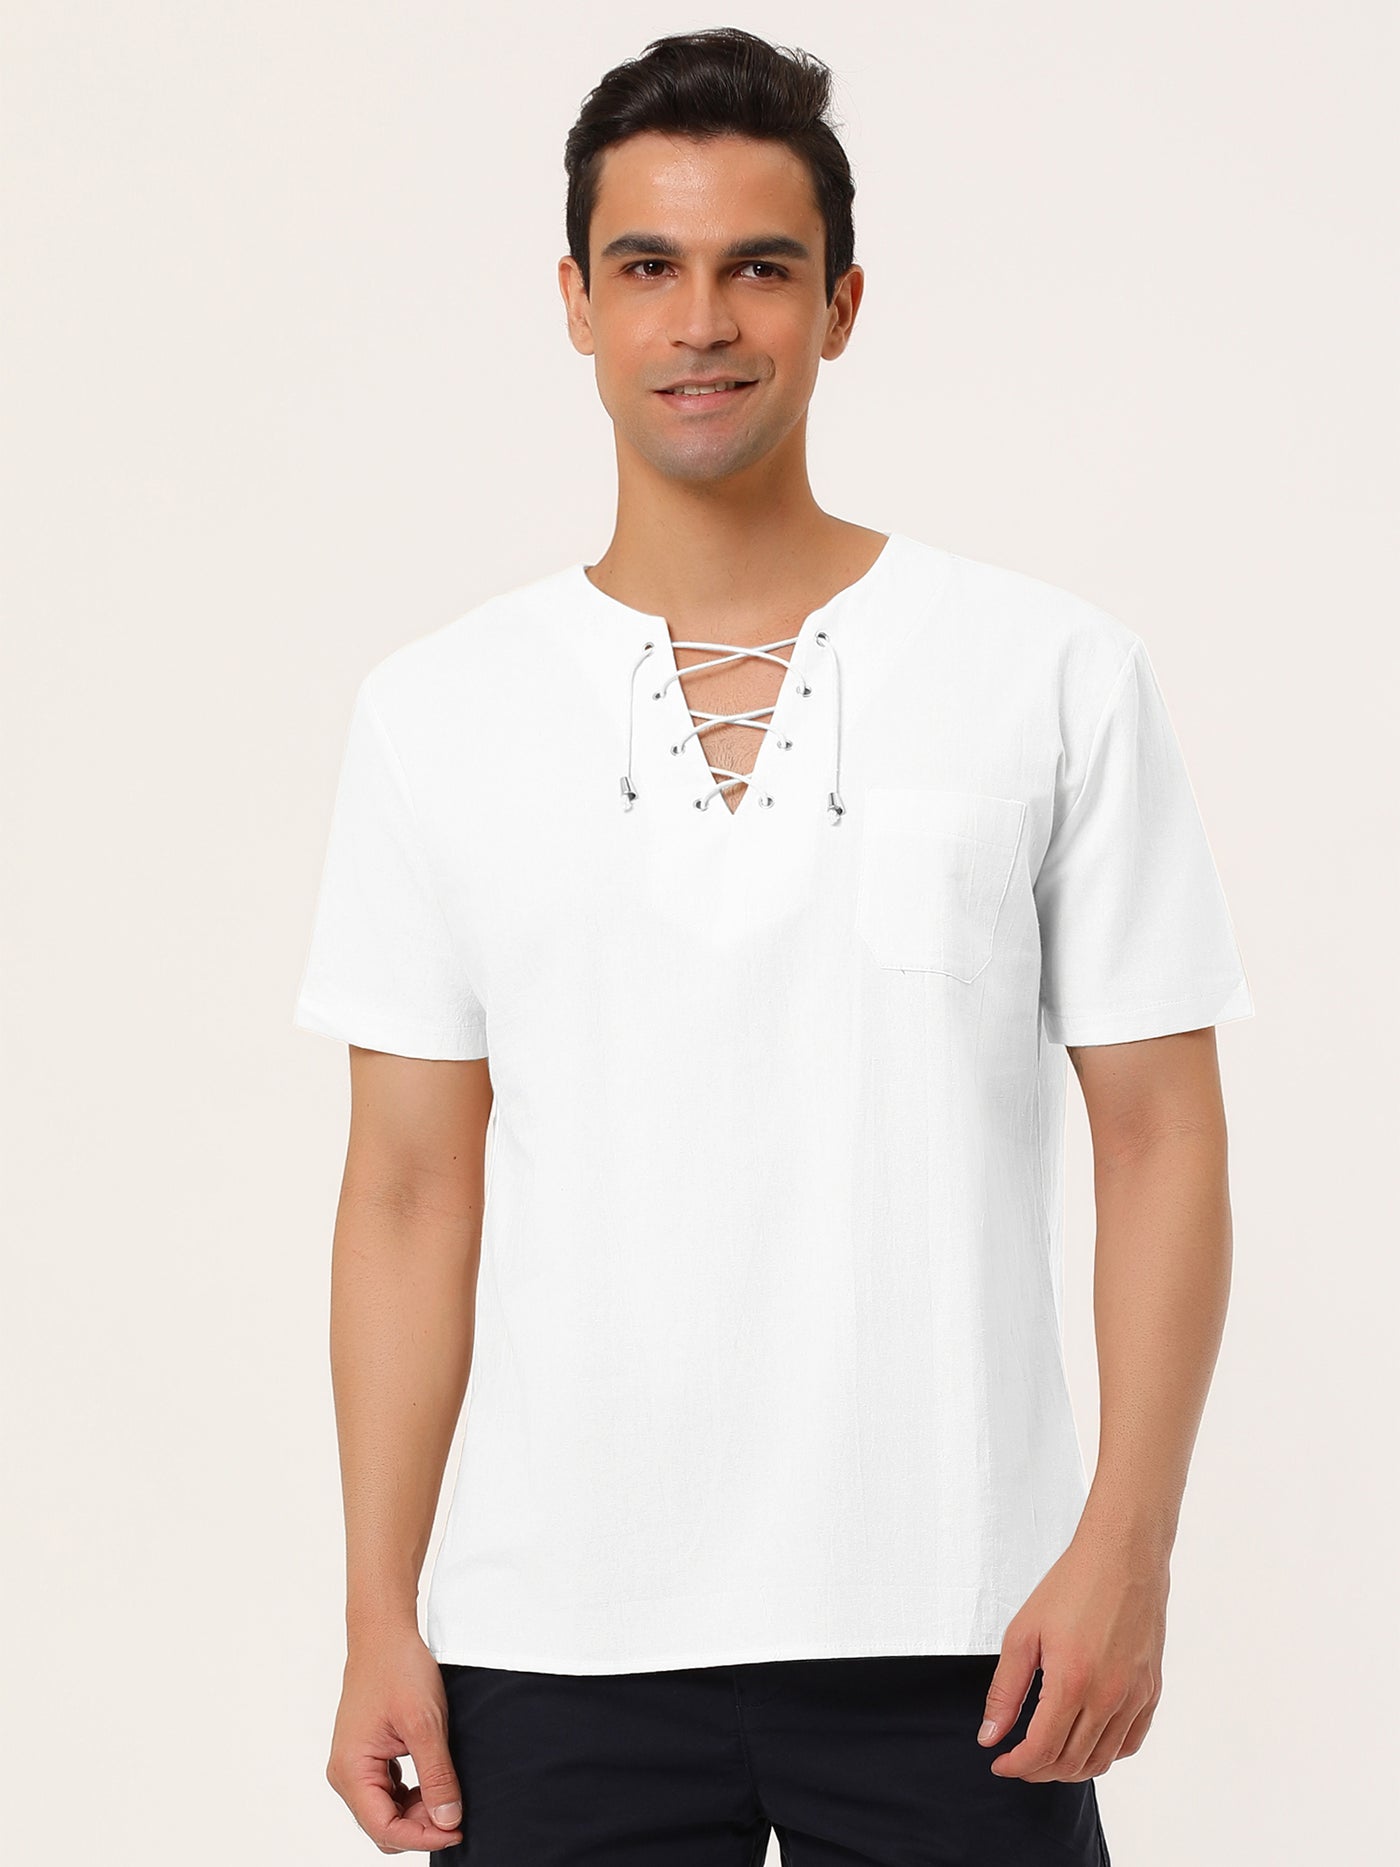 Bublédon Linen V-Neck Lace Up Solid Color Short Sleeve Shirt